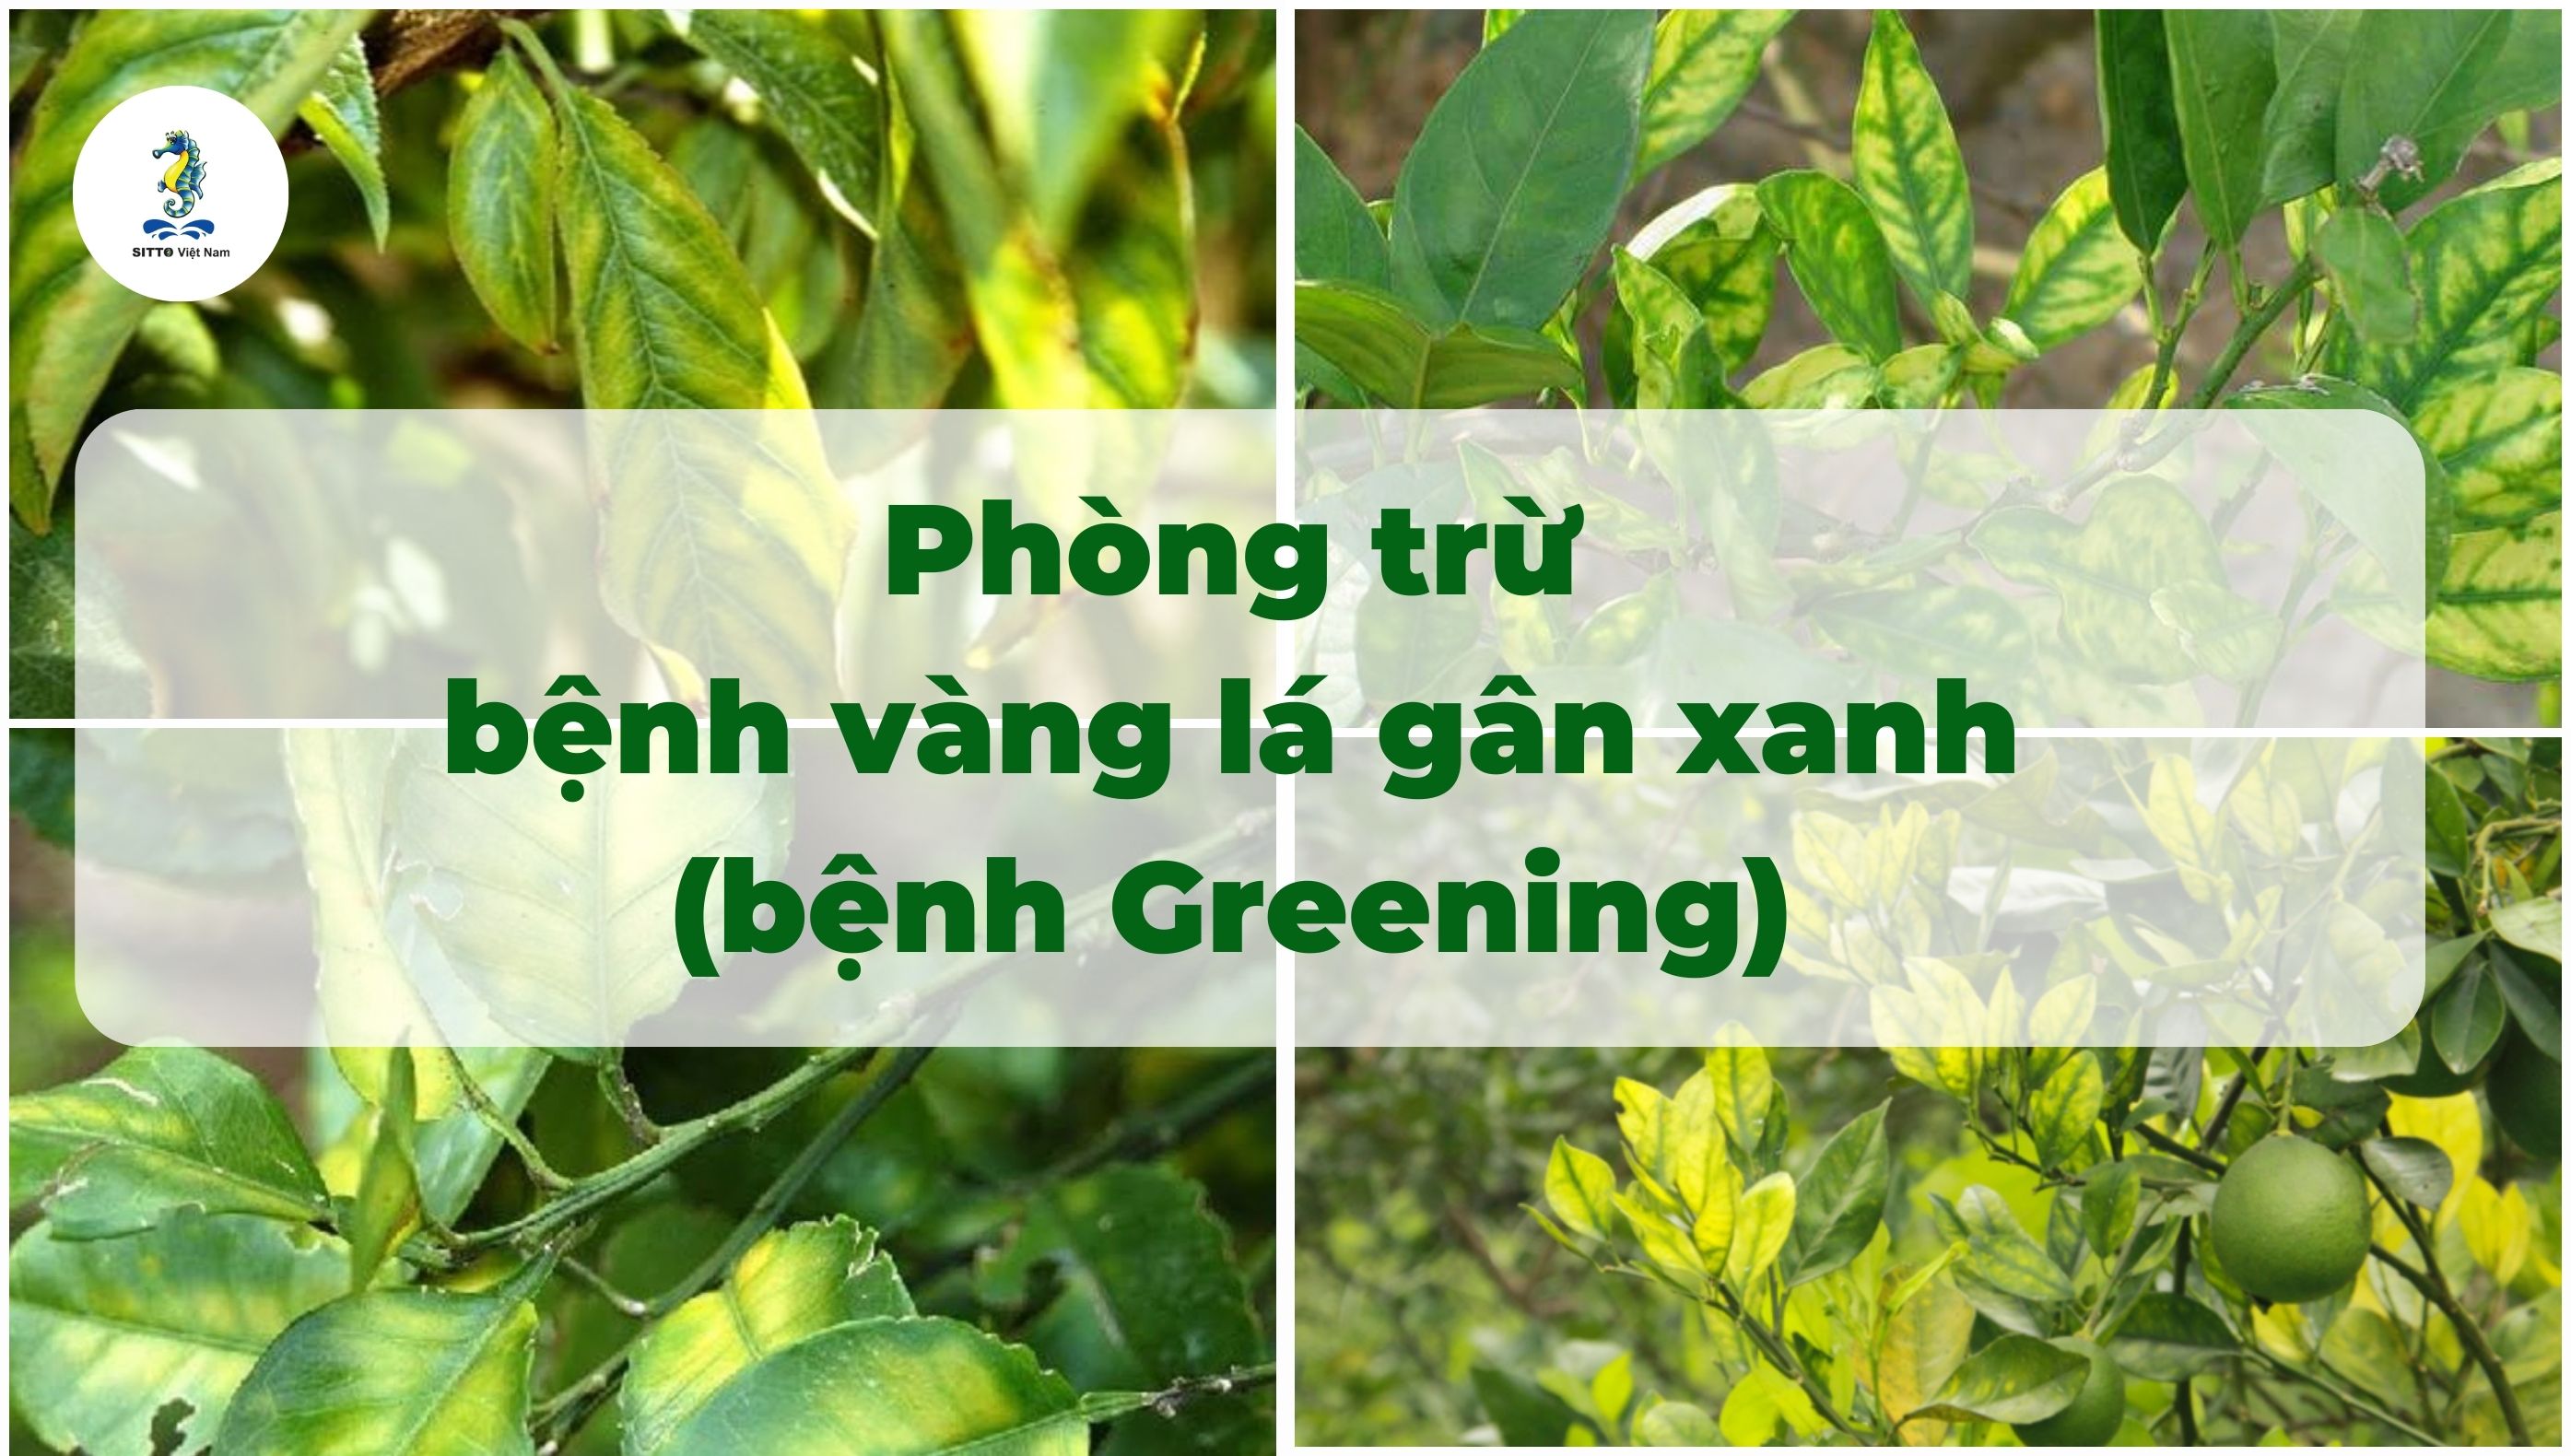 Quy trình phòng trừ bệnh Greening (bệnh vàng lá gân xanh) trên cây bưởi, cam, quýt